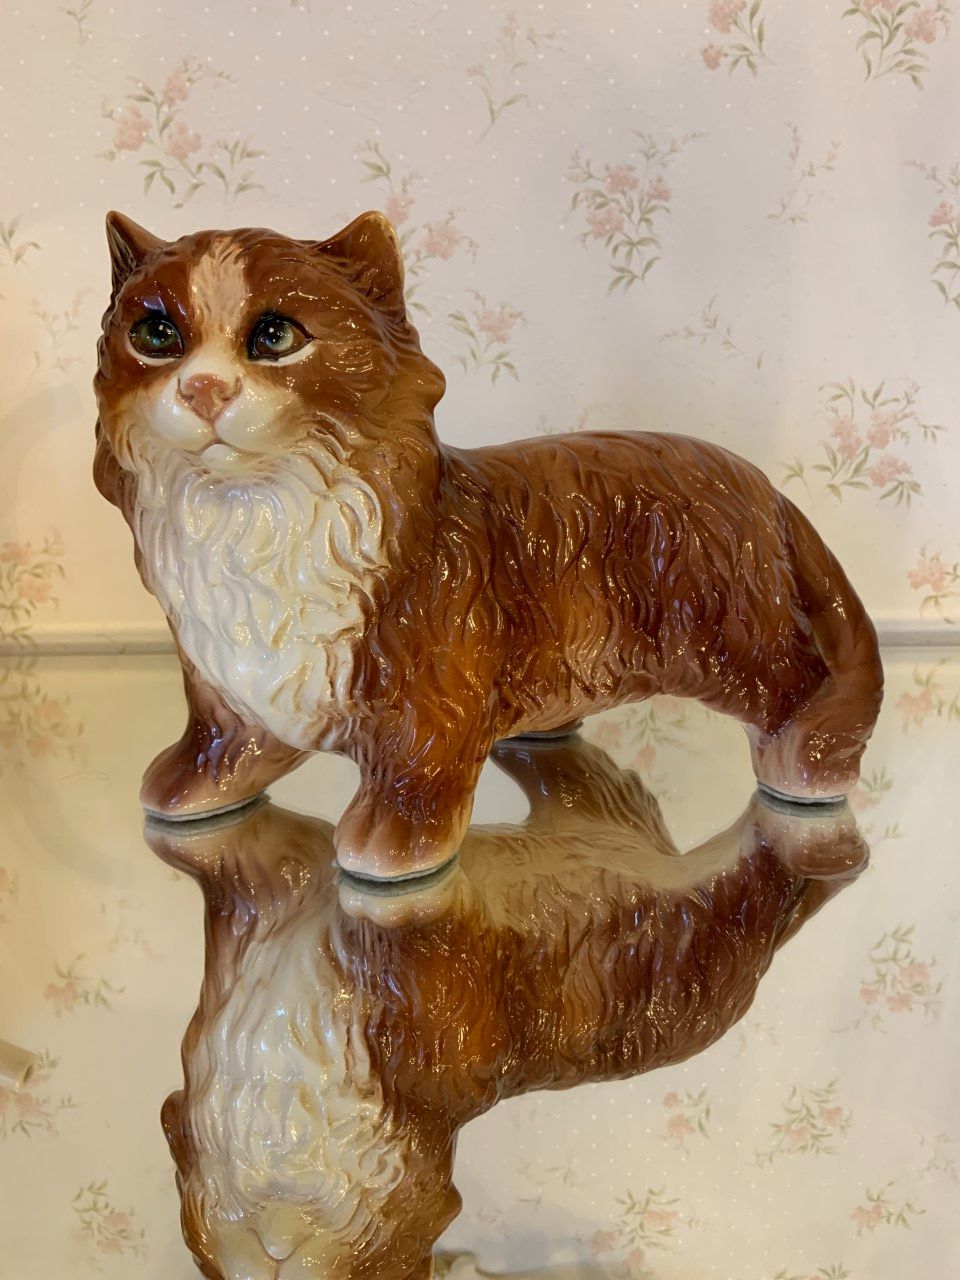 イタリア製 猫の陶器の置物-